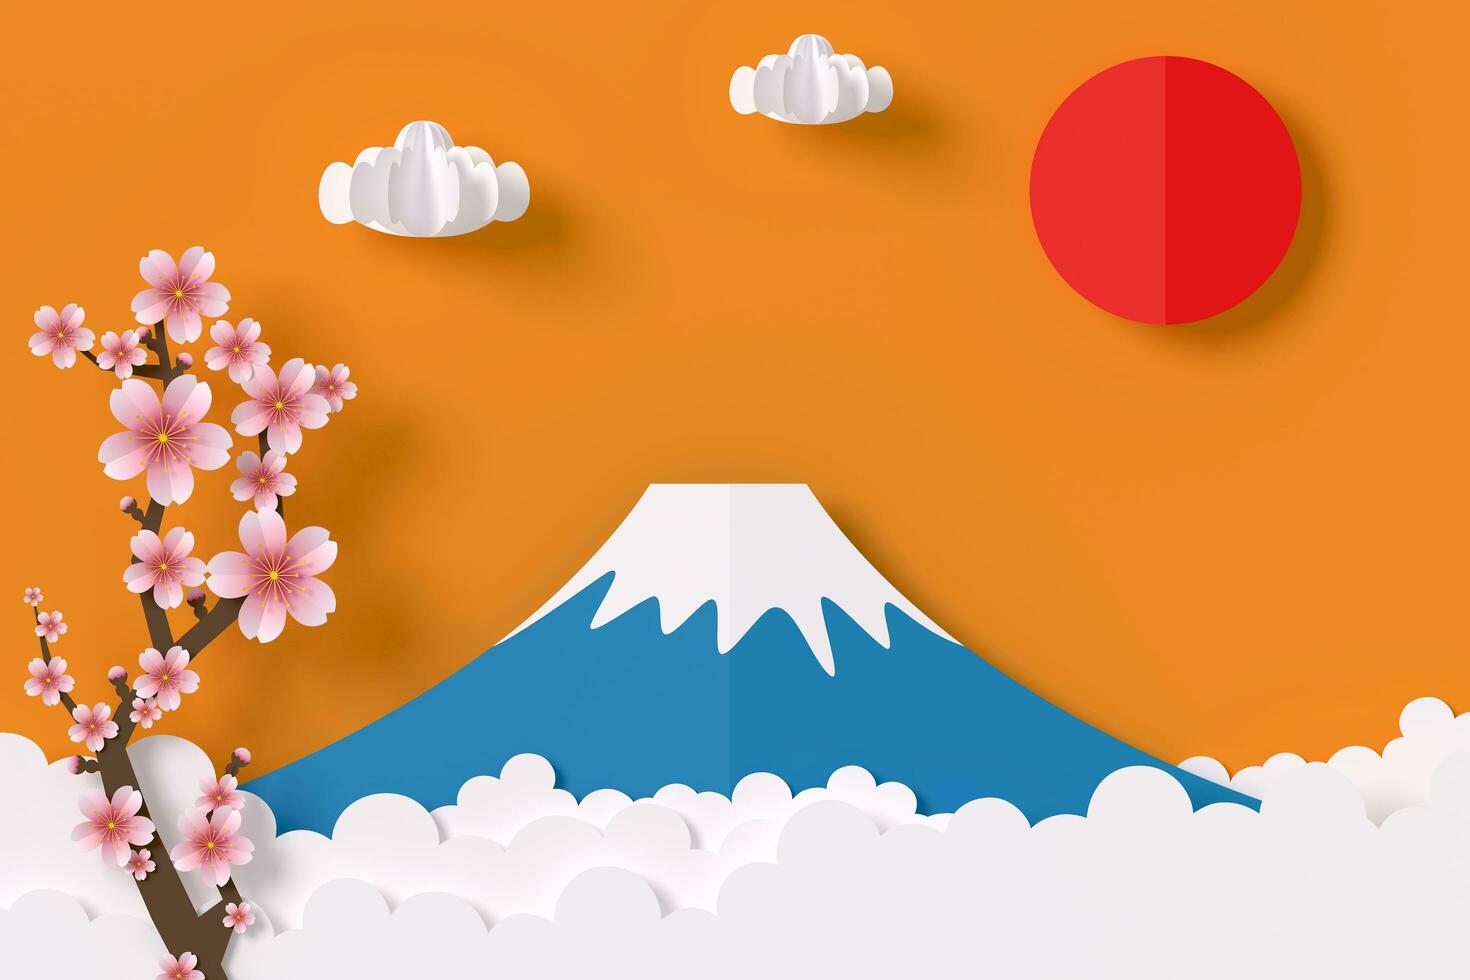 Fuji montanha com sakura e vermelho Sol papel estilo, 3d Renderização foto